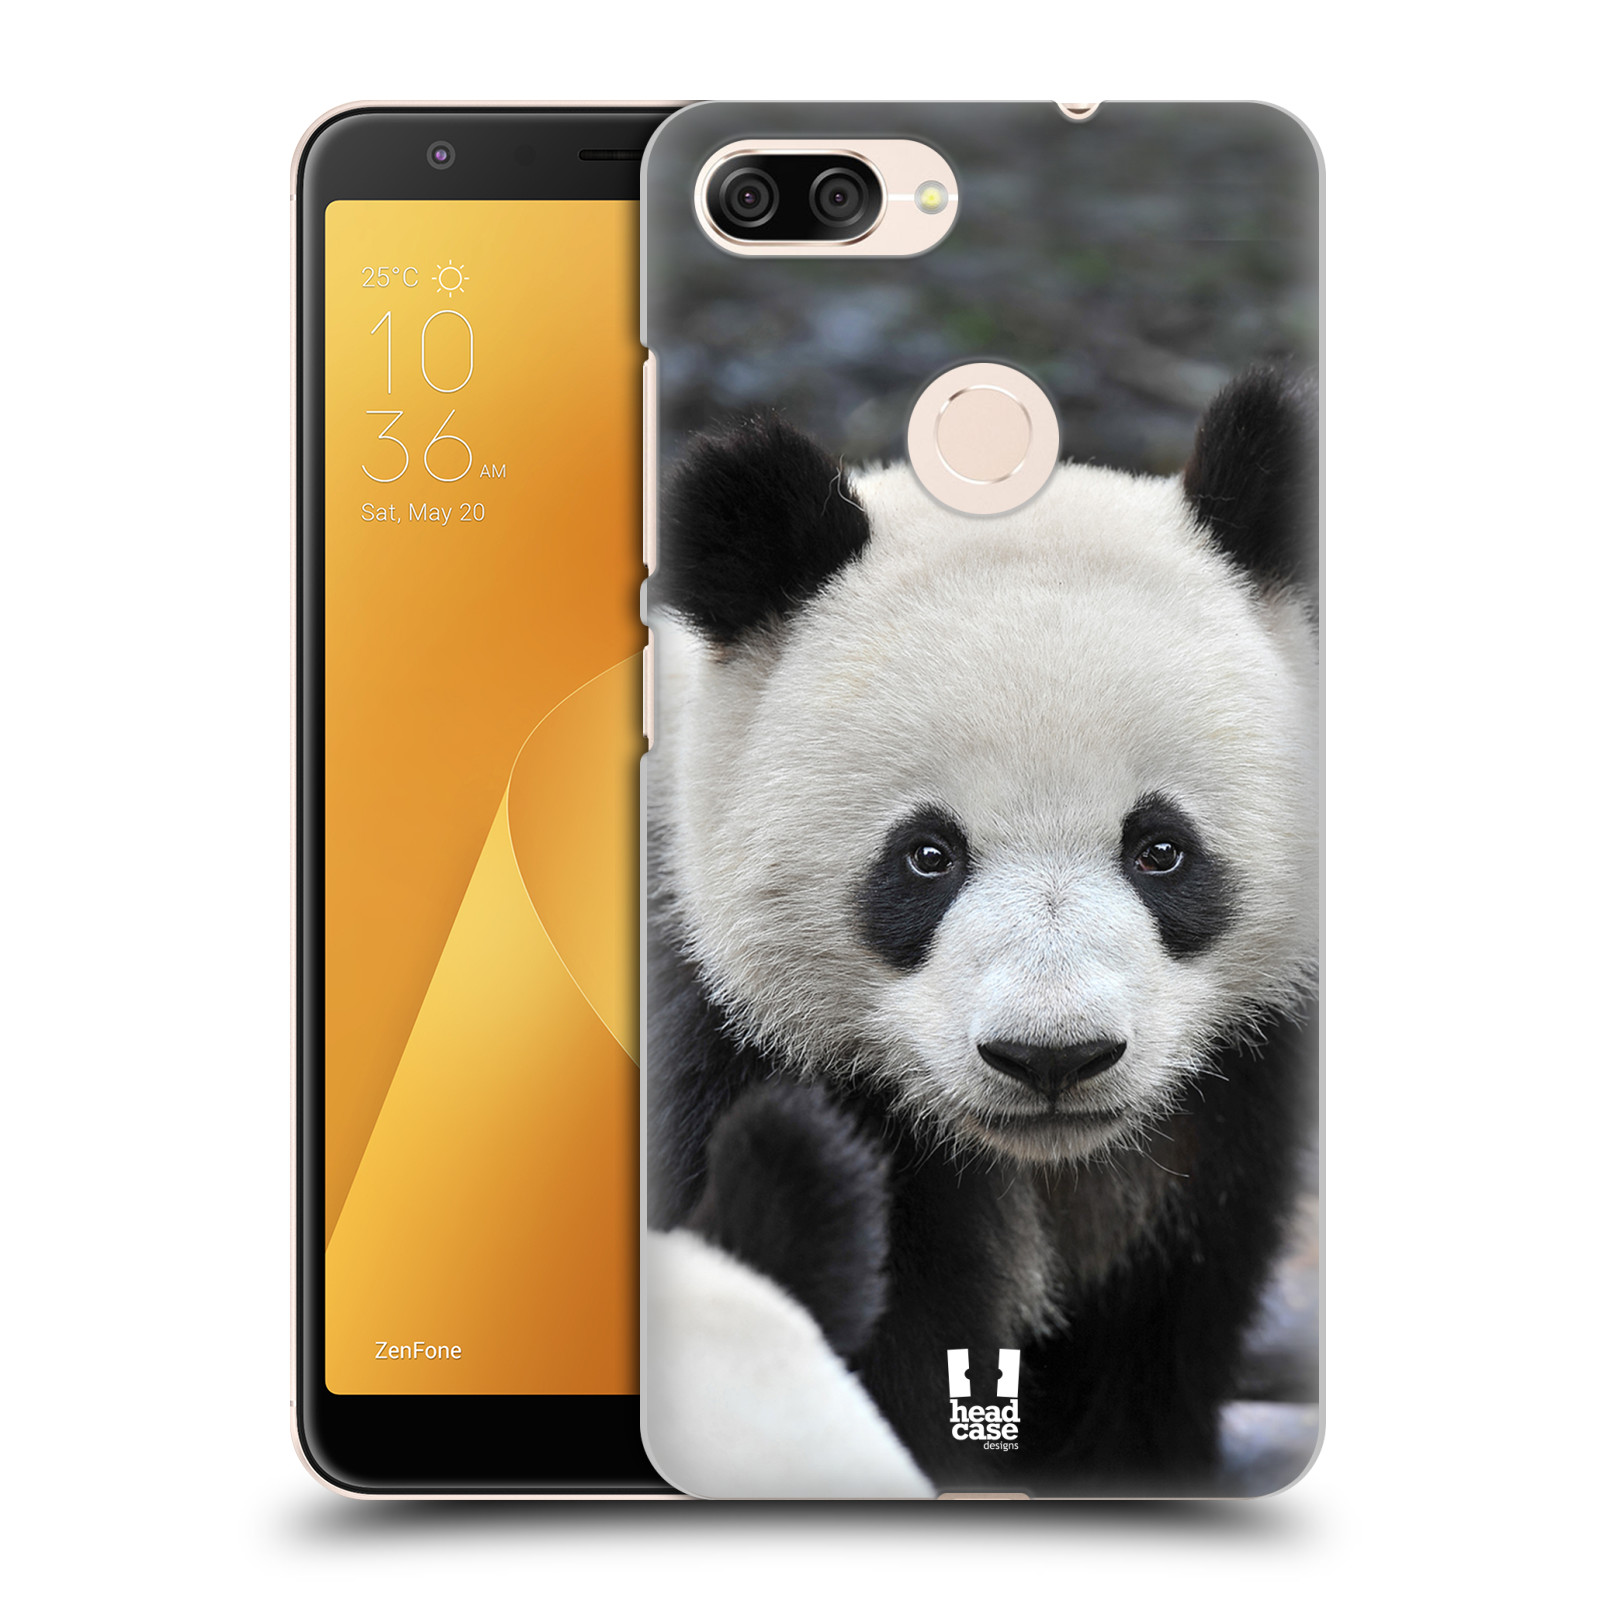 Zadní obal pro mobil Asus Zenfone Max Plus (M1) - HEAD CASE - Svět zvířat medvěd panda